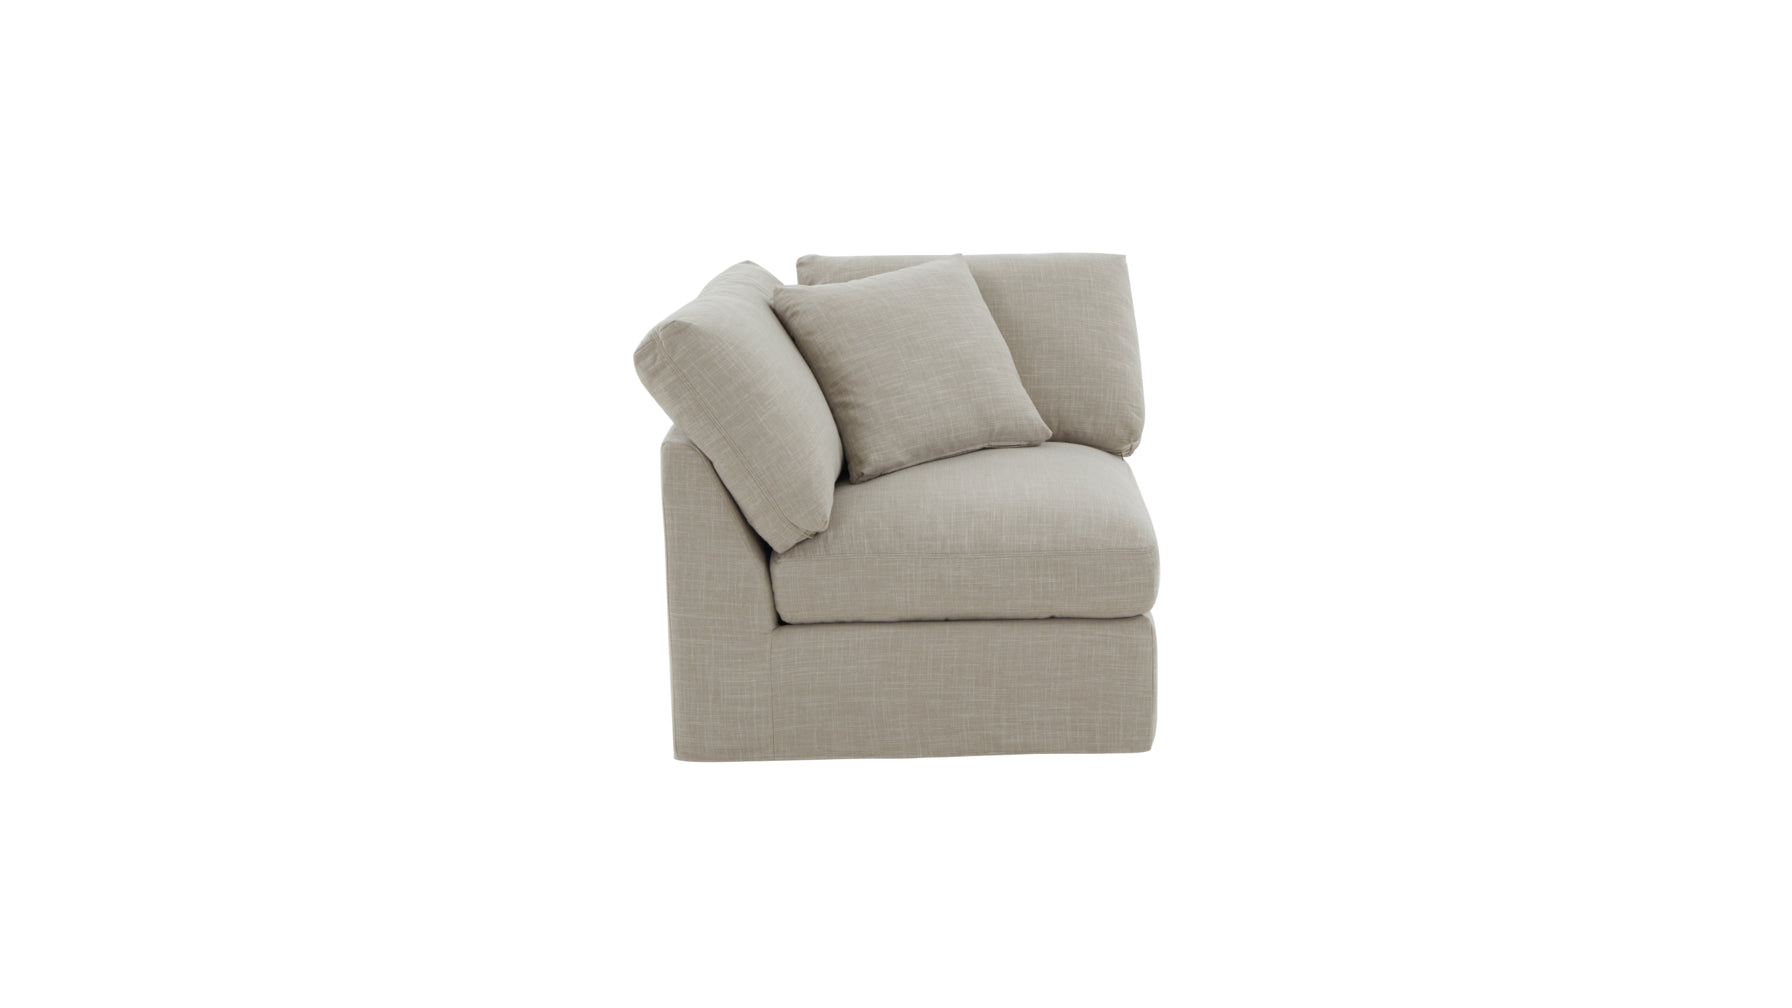 Get Together™ Corner Chair, Standard, Light Pebble - Image 6